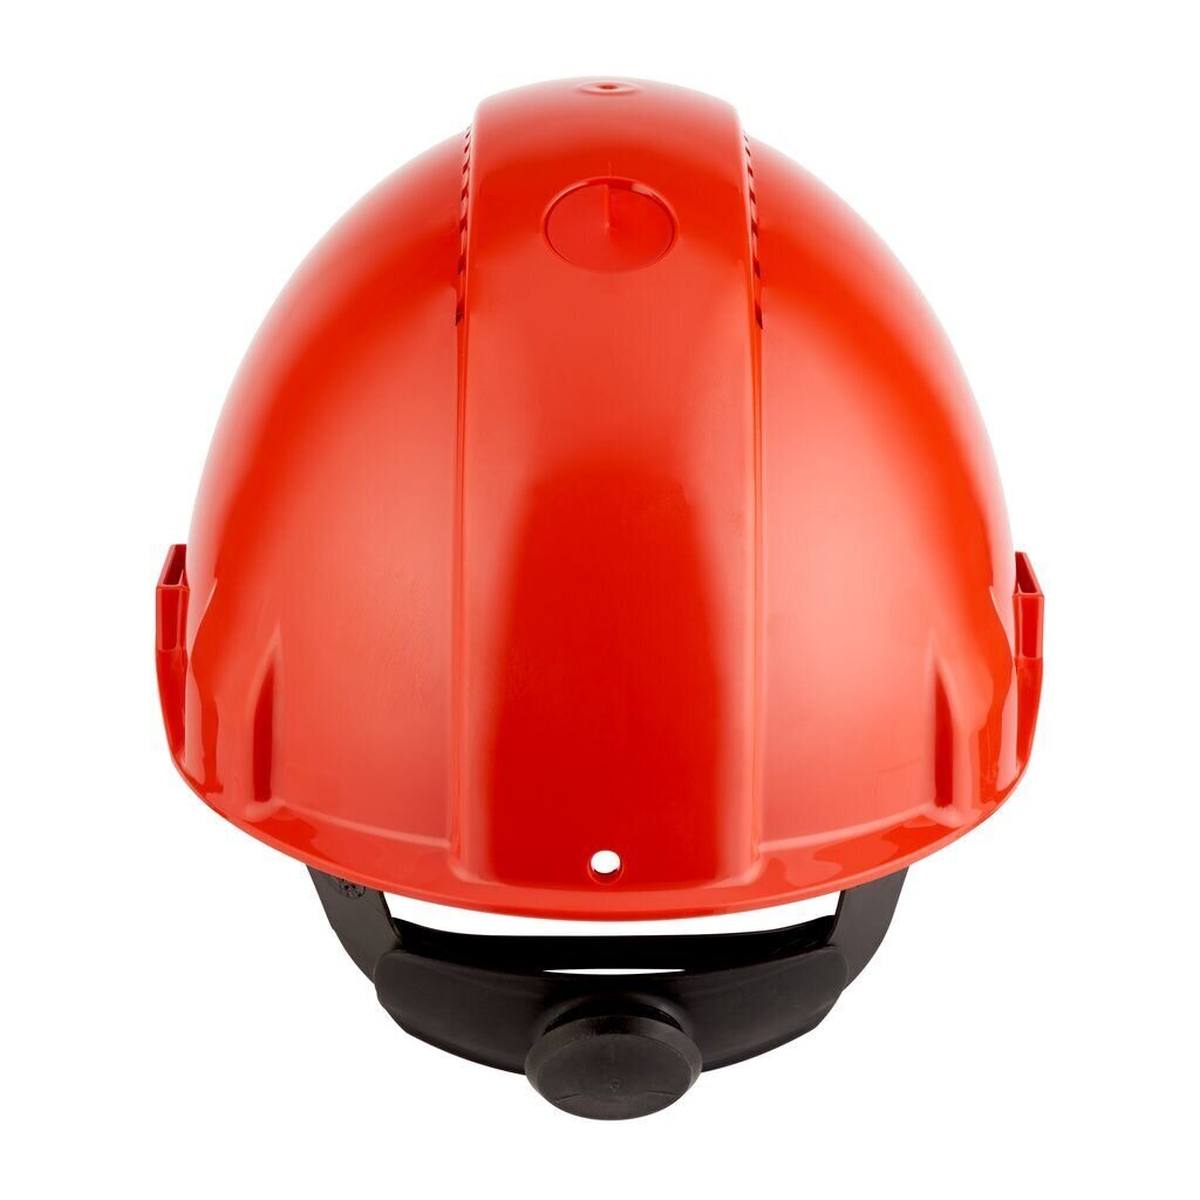 elmetto di sicurezza 3M G3000 G30NUR di colore rosso, ventilato, con uvicatore, cricchetto e cinturino in plastica per saldatura